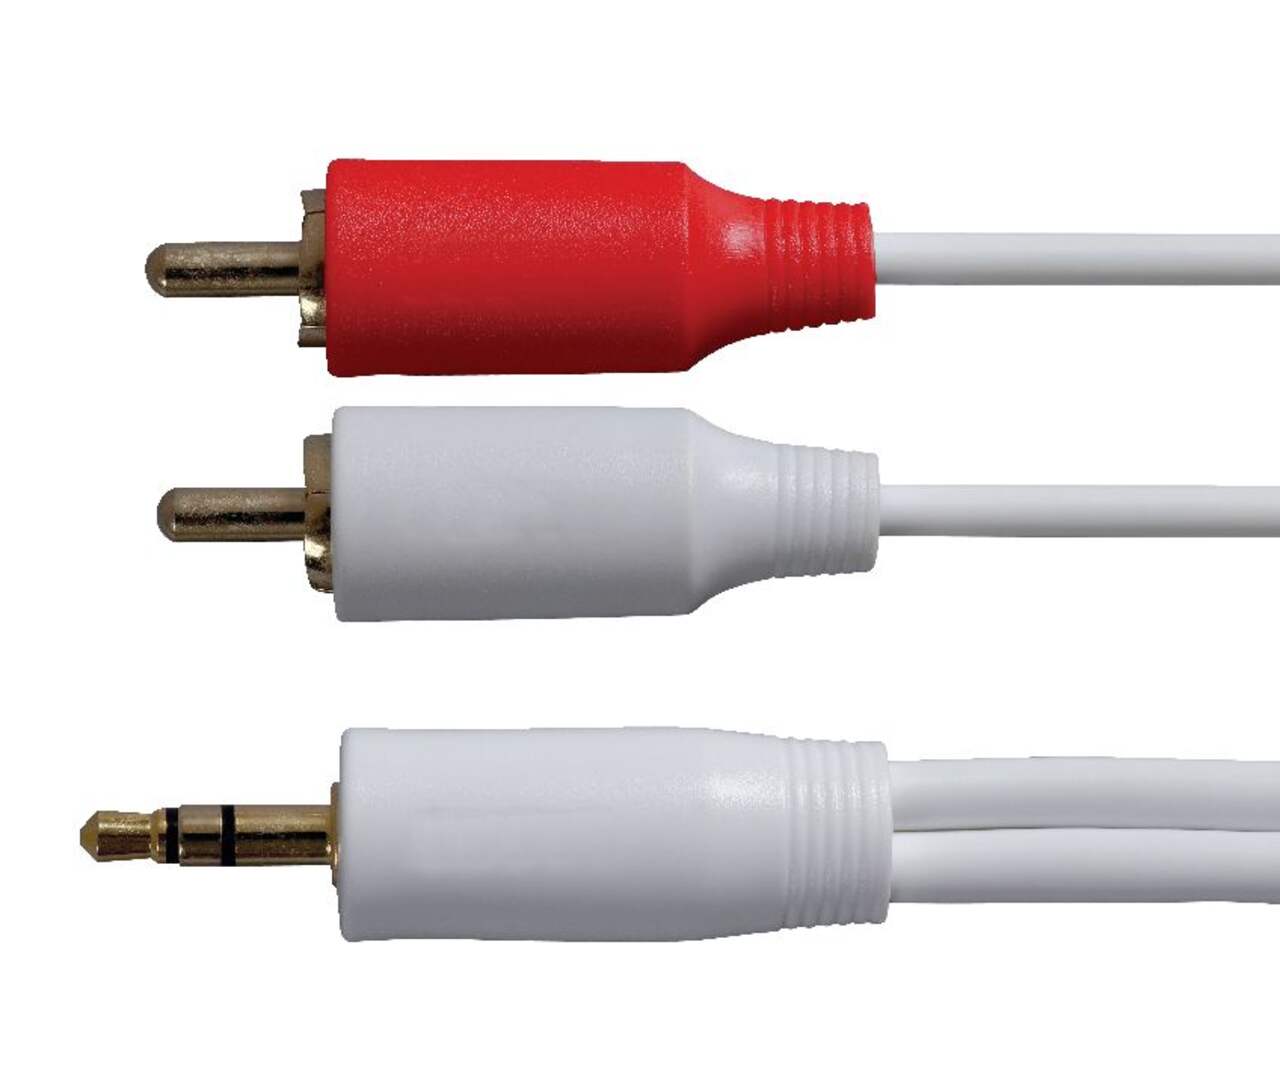 Sans Marque Câble Audio Auxiliaire Voiture, 3.5mm Stéréo Adaptateur Mâle à  prix pas cher